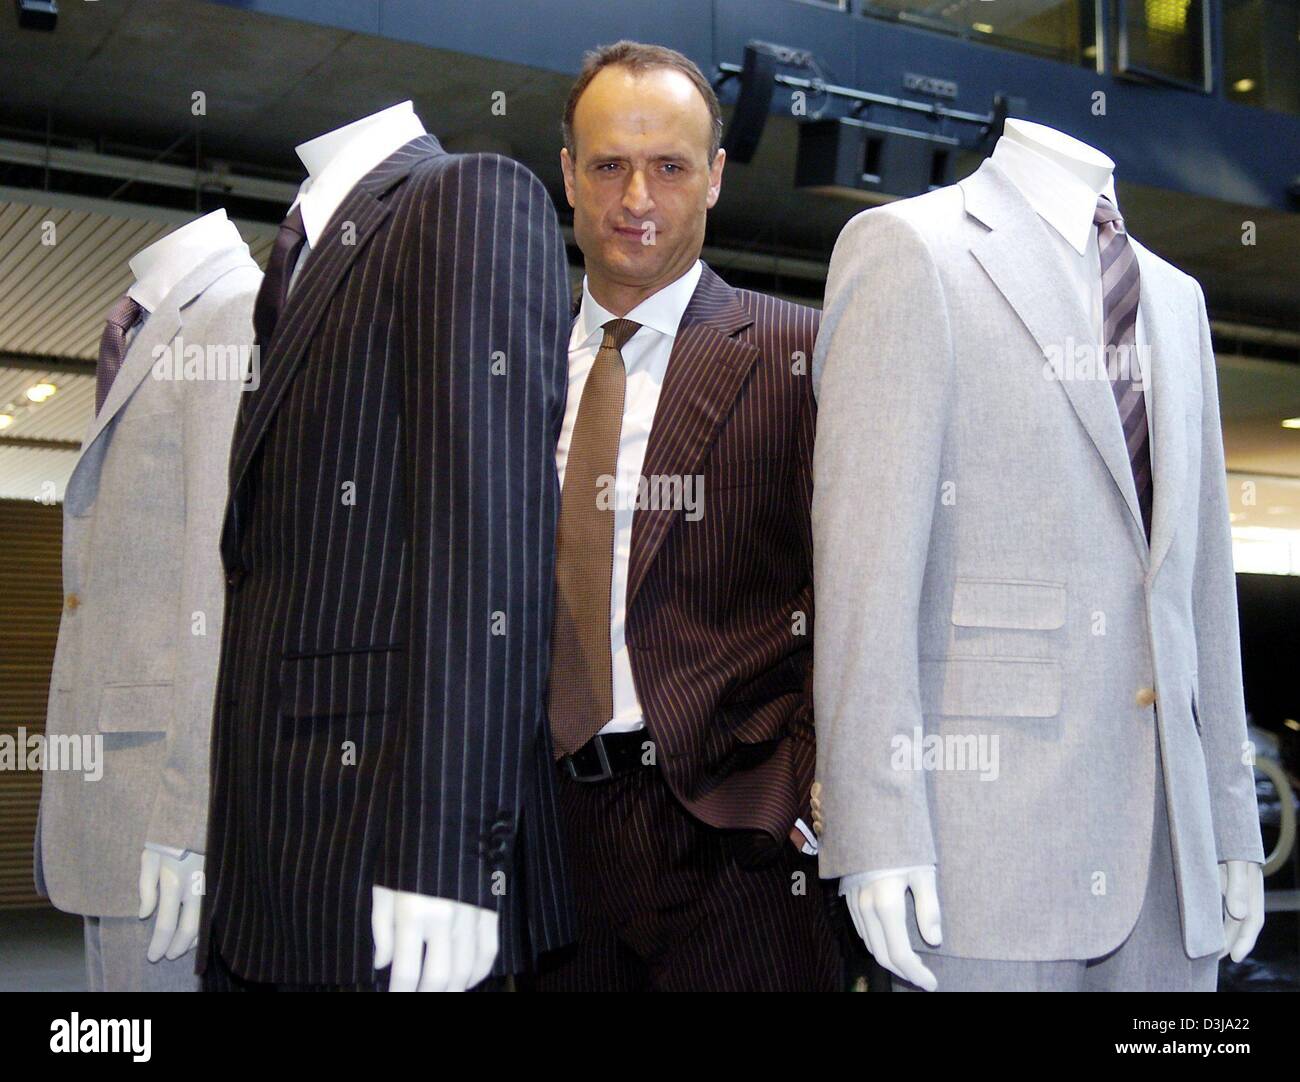 (Afp) - Bruno Saelzer, président-directeur général et président de la mode allemande Hugo Boss géant, se dresse entre les modèles conviennent au cours d'une conférence de presse bilan au siège de la société à Metzingen, Allemagne, 1 avril 2004. La société est fixé à légèrement accroître les profits cette année. Banque D'Images